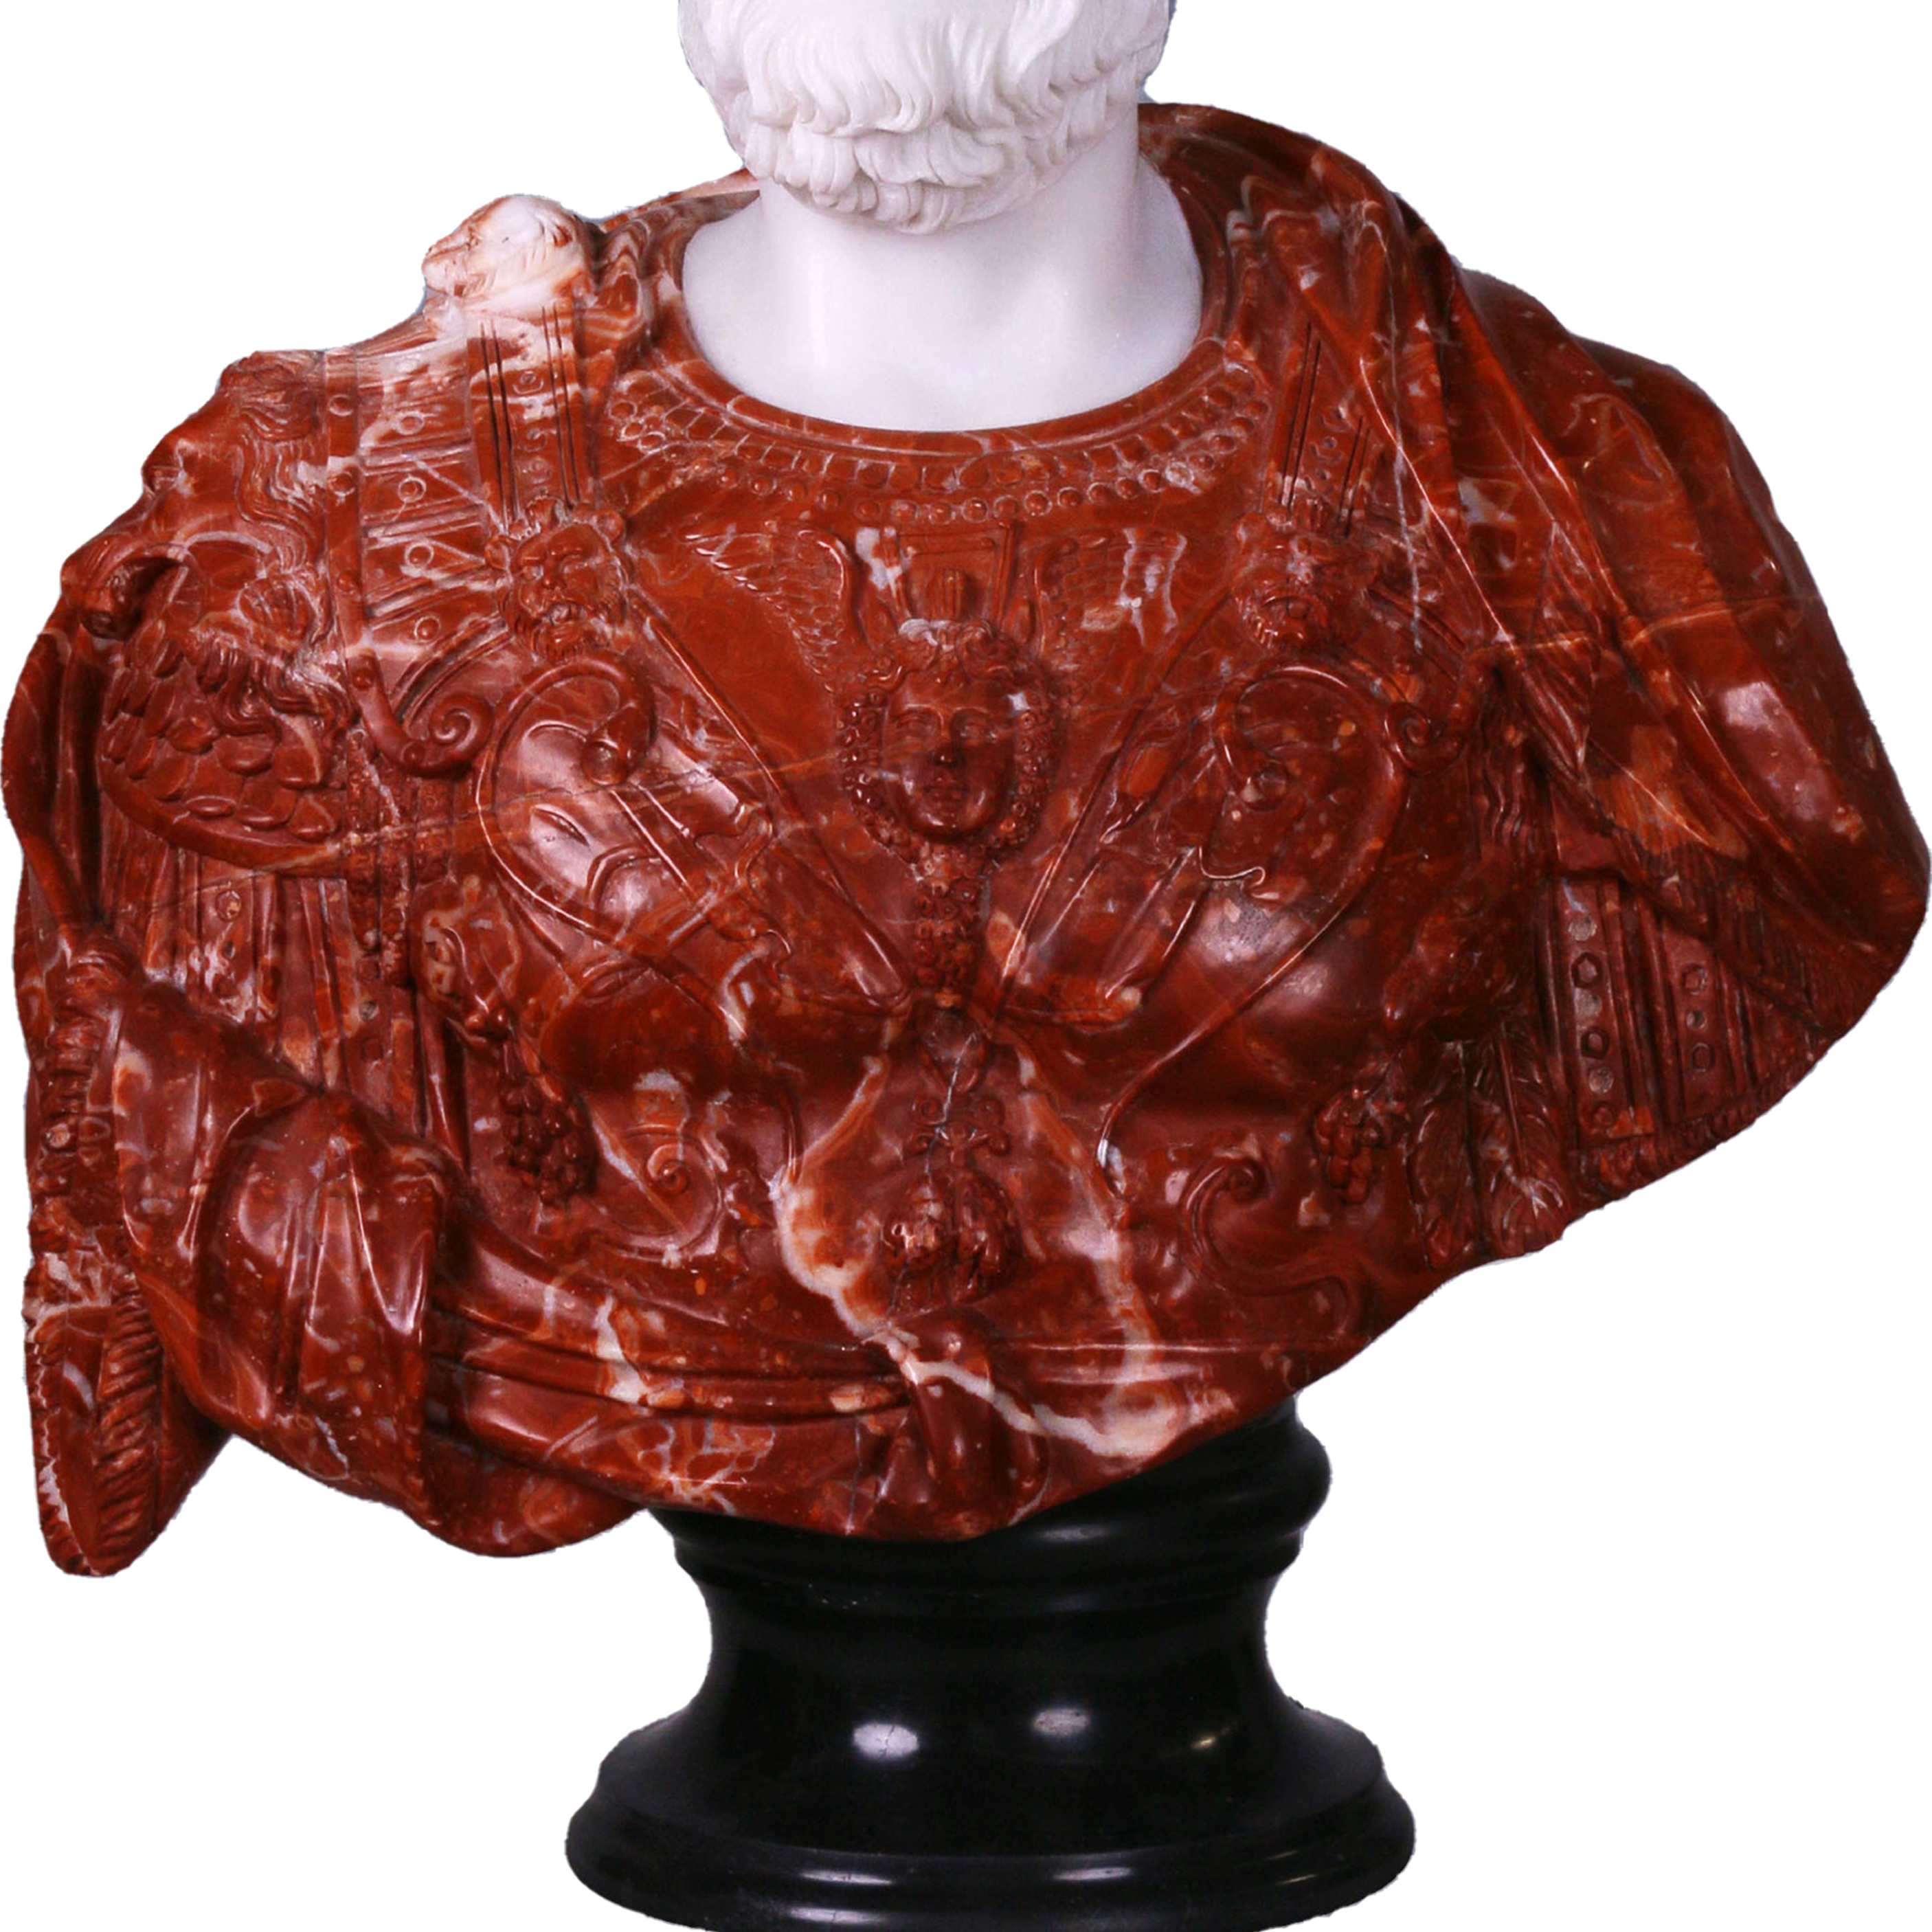 Cette image est une sculpture de l'artiste Léo Caillard, intitulée "Red Lucius ". Cette pièce unique de 75 cm, réalisée en marbre rouge et en marbre blanc représente un buste d'un empereur romain, avec des attributs contemporains : une casquette et des grosses lunettes. Vous pouvez retrouver cette pièce à la Galerie Montmartre à Paris, France.